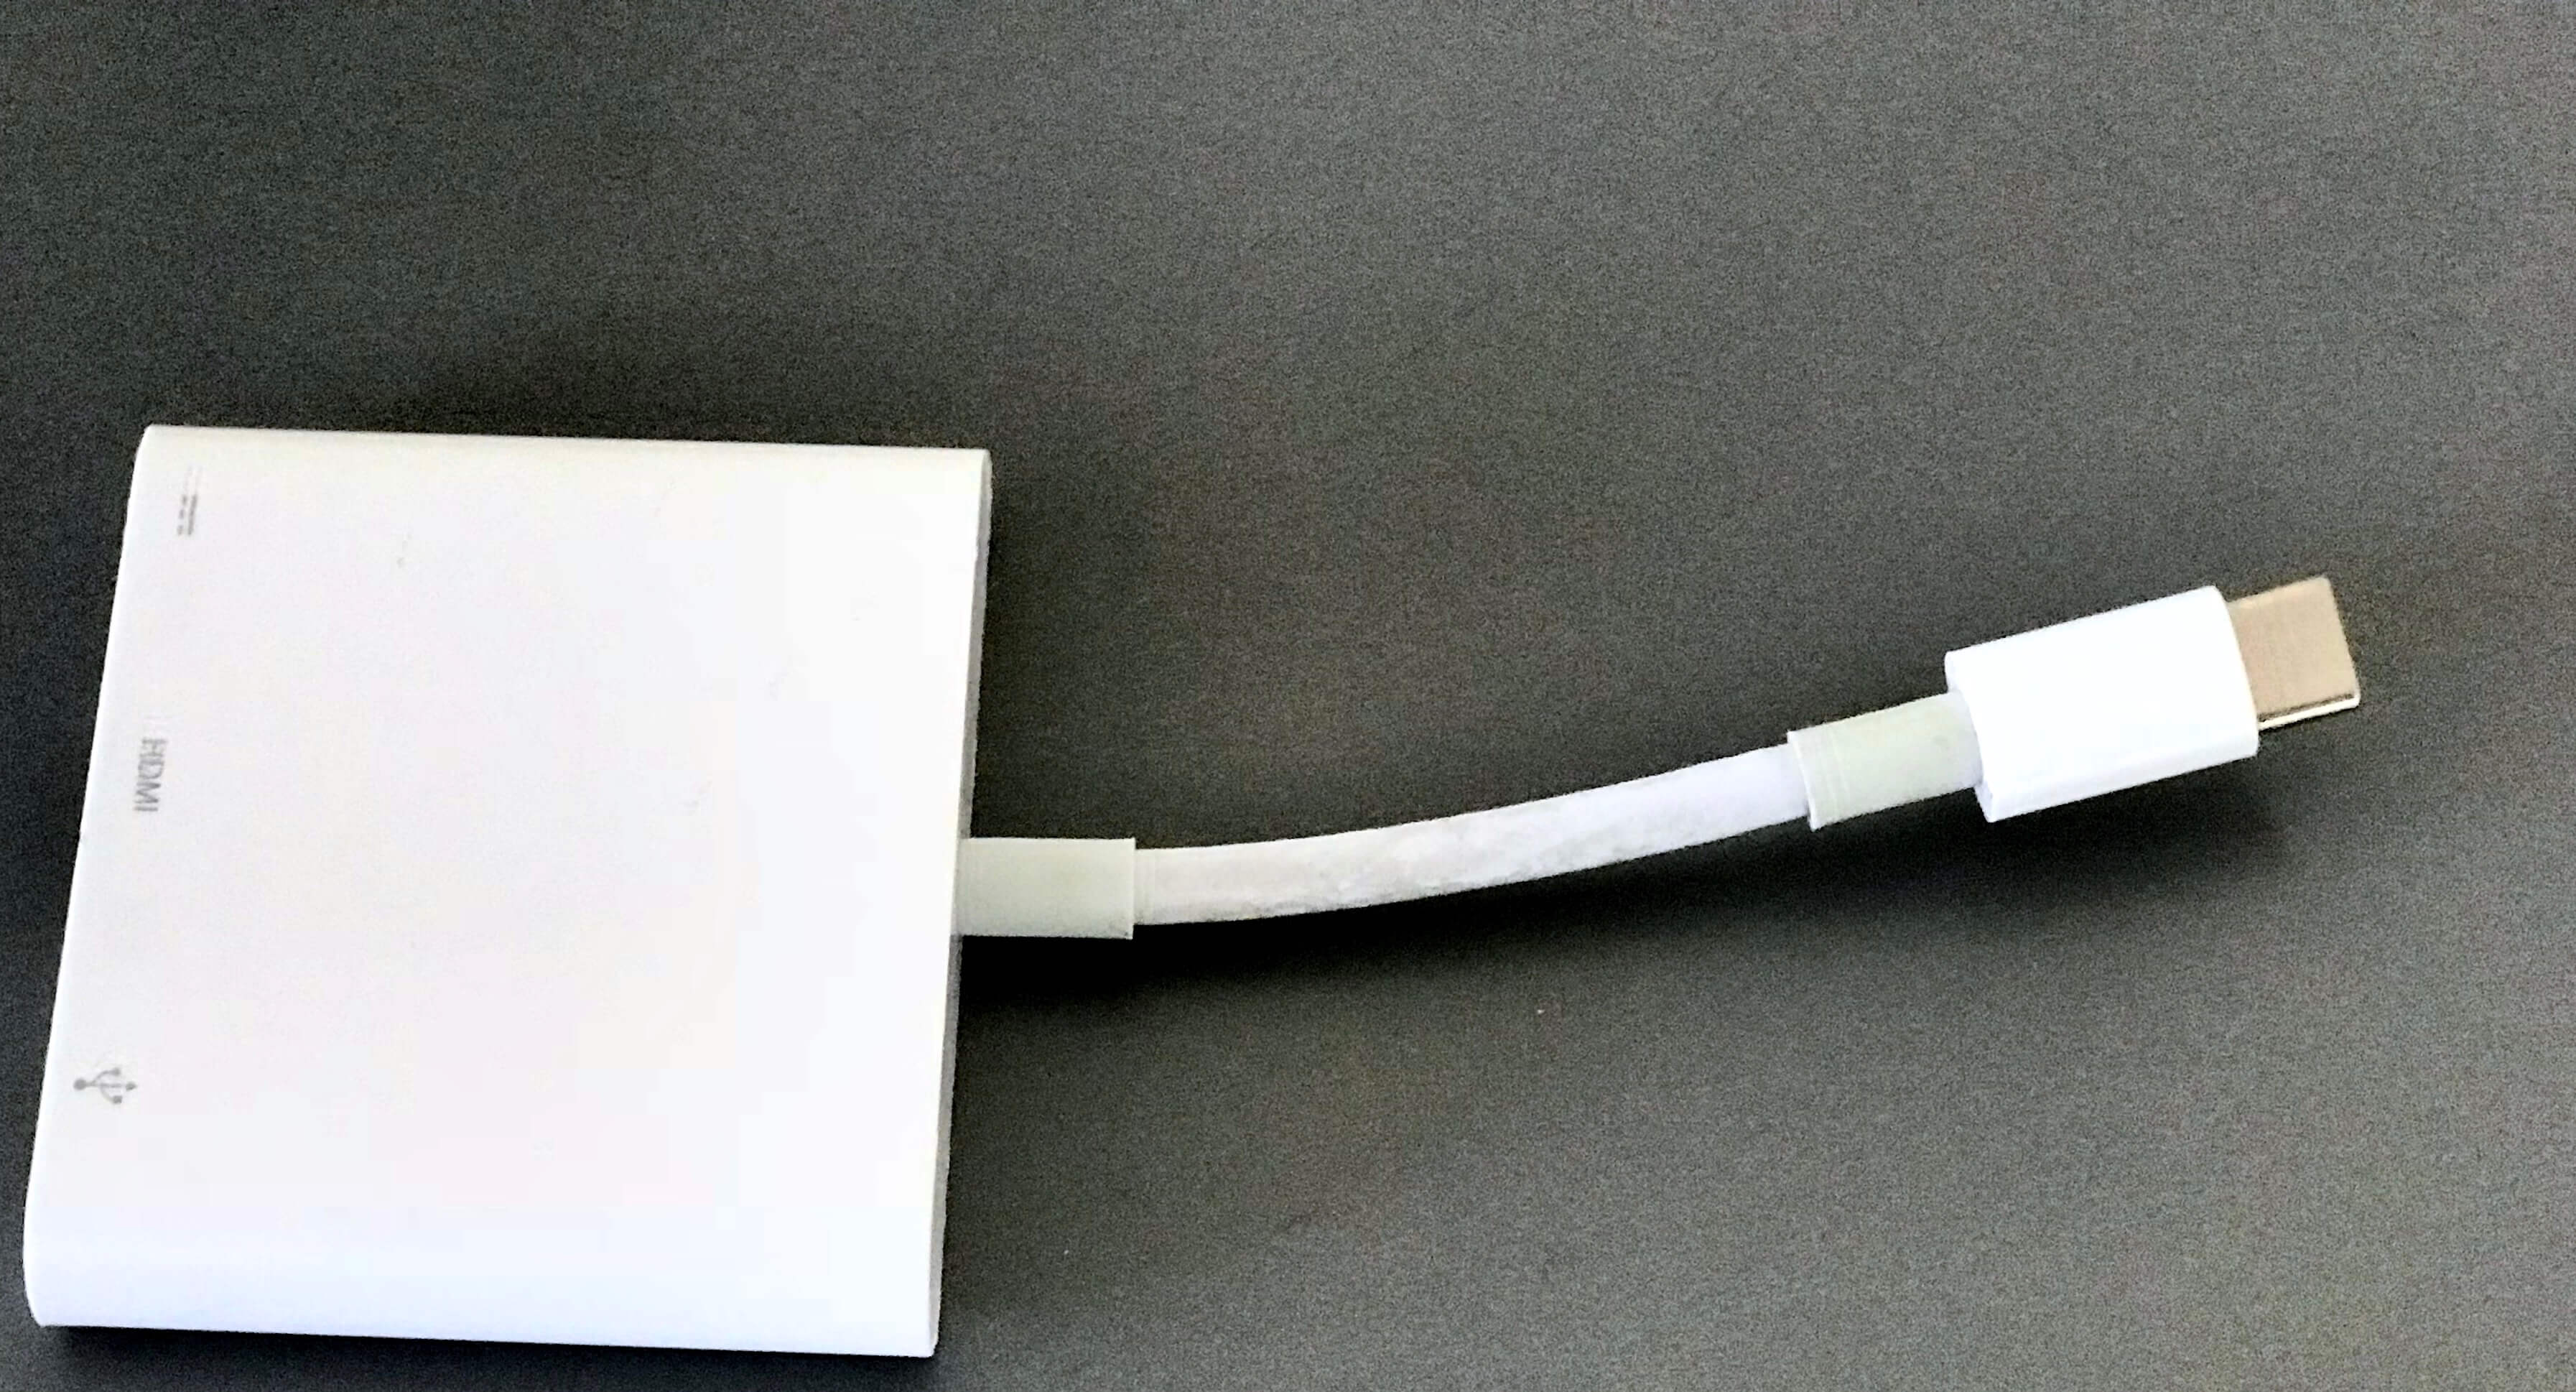 Met deze "mini hub" krijg je USB, USB-C en HDMI op één aansluiting